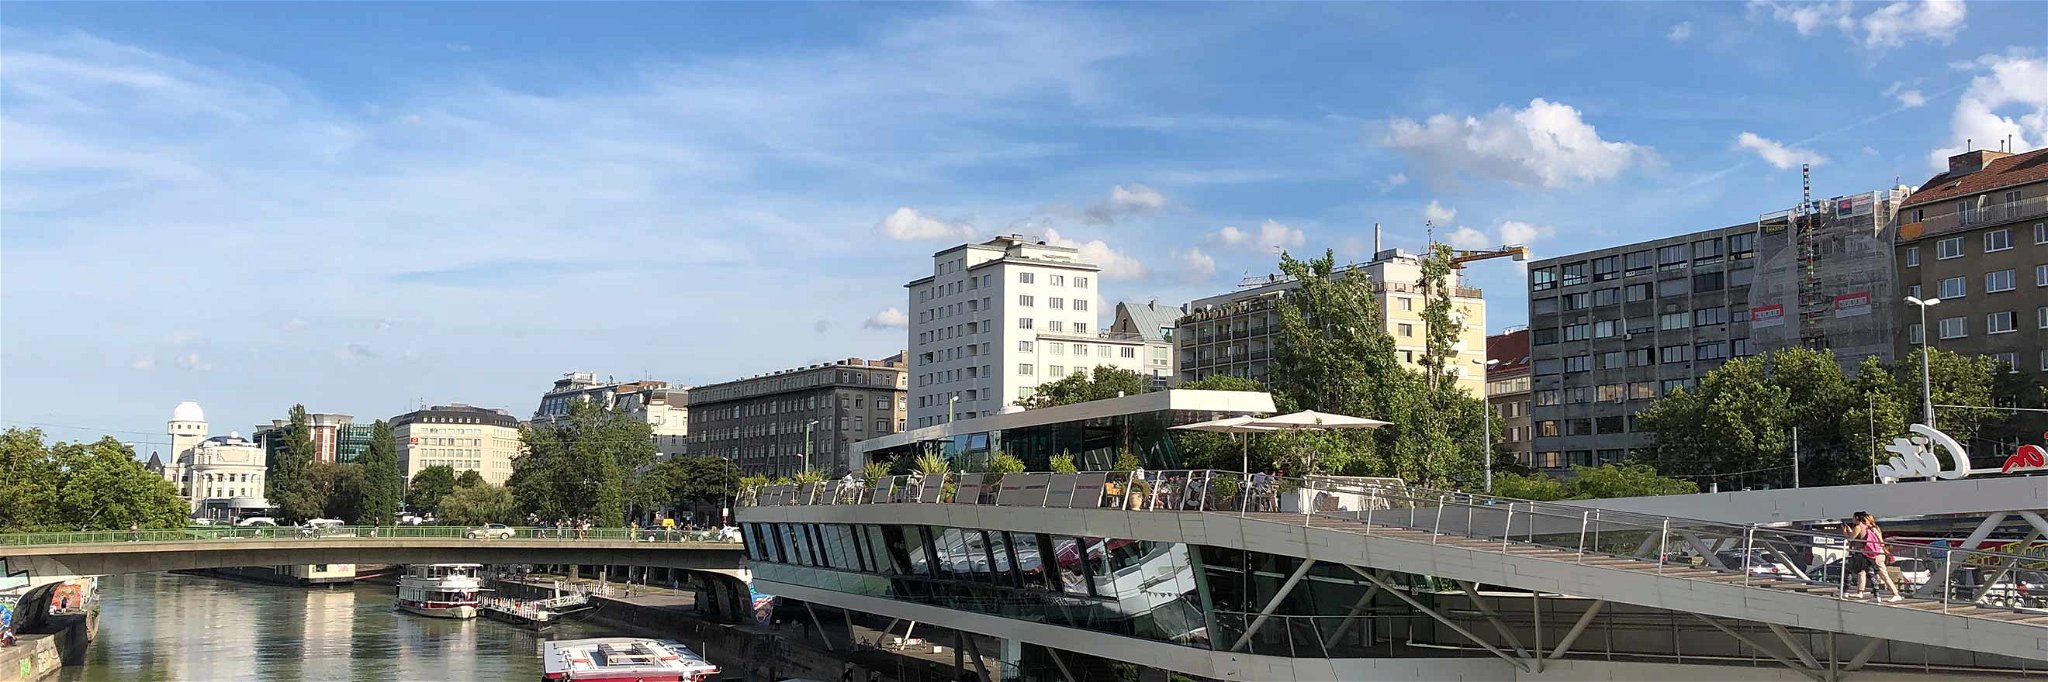 Blick auf den Donaukanal, die Anlegestelle des Twin-City-Liners und das »Motto am Fluss«